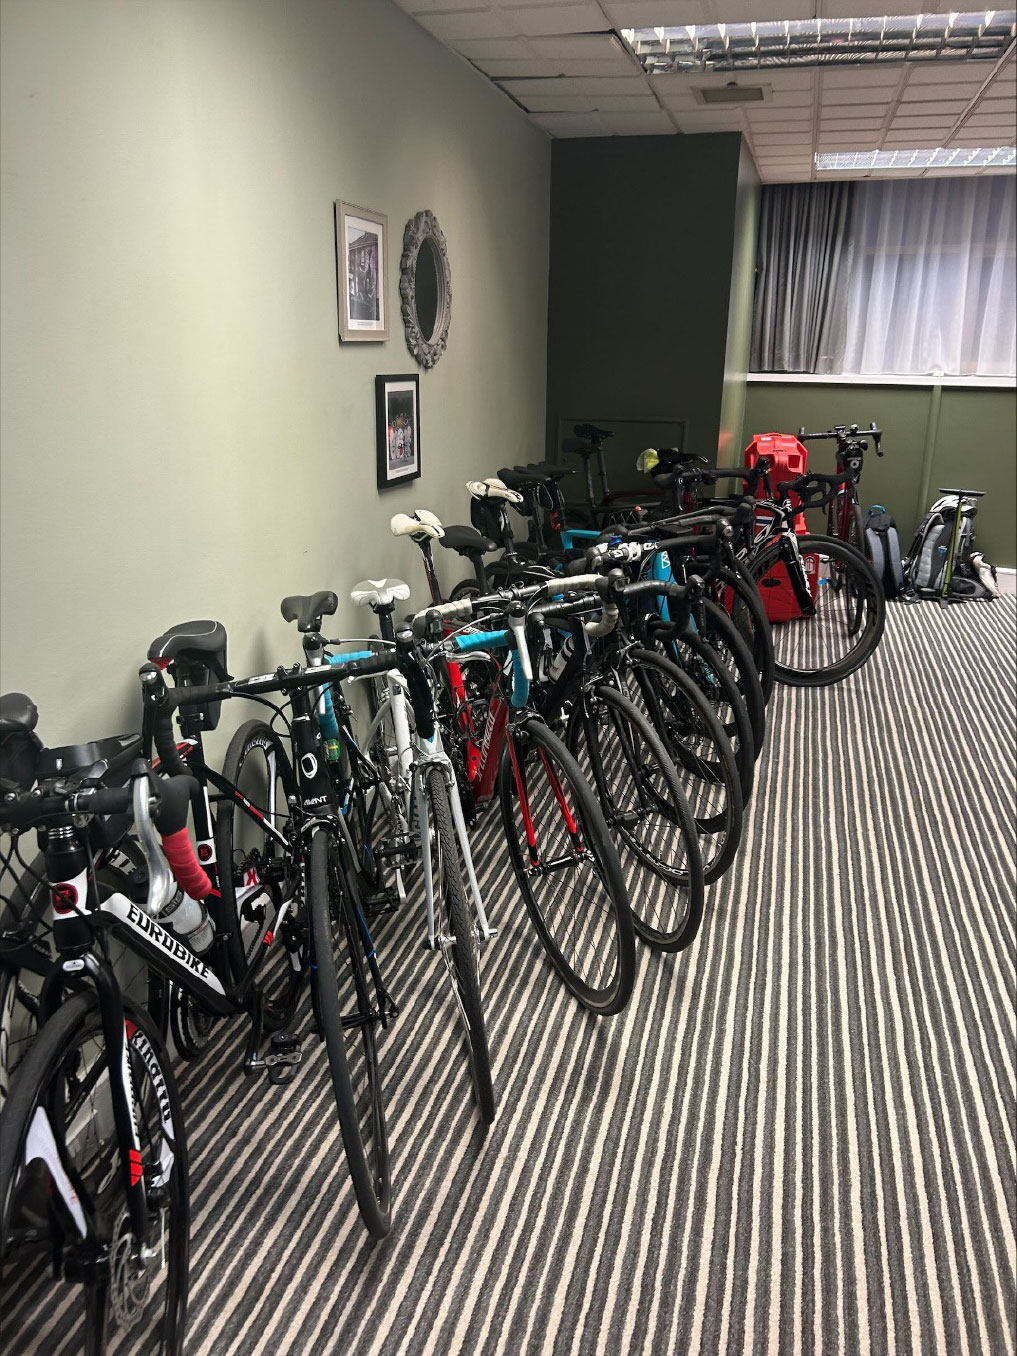 Un grupo de bicicletas en una habitaciónDescripción generada automáticamente